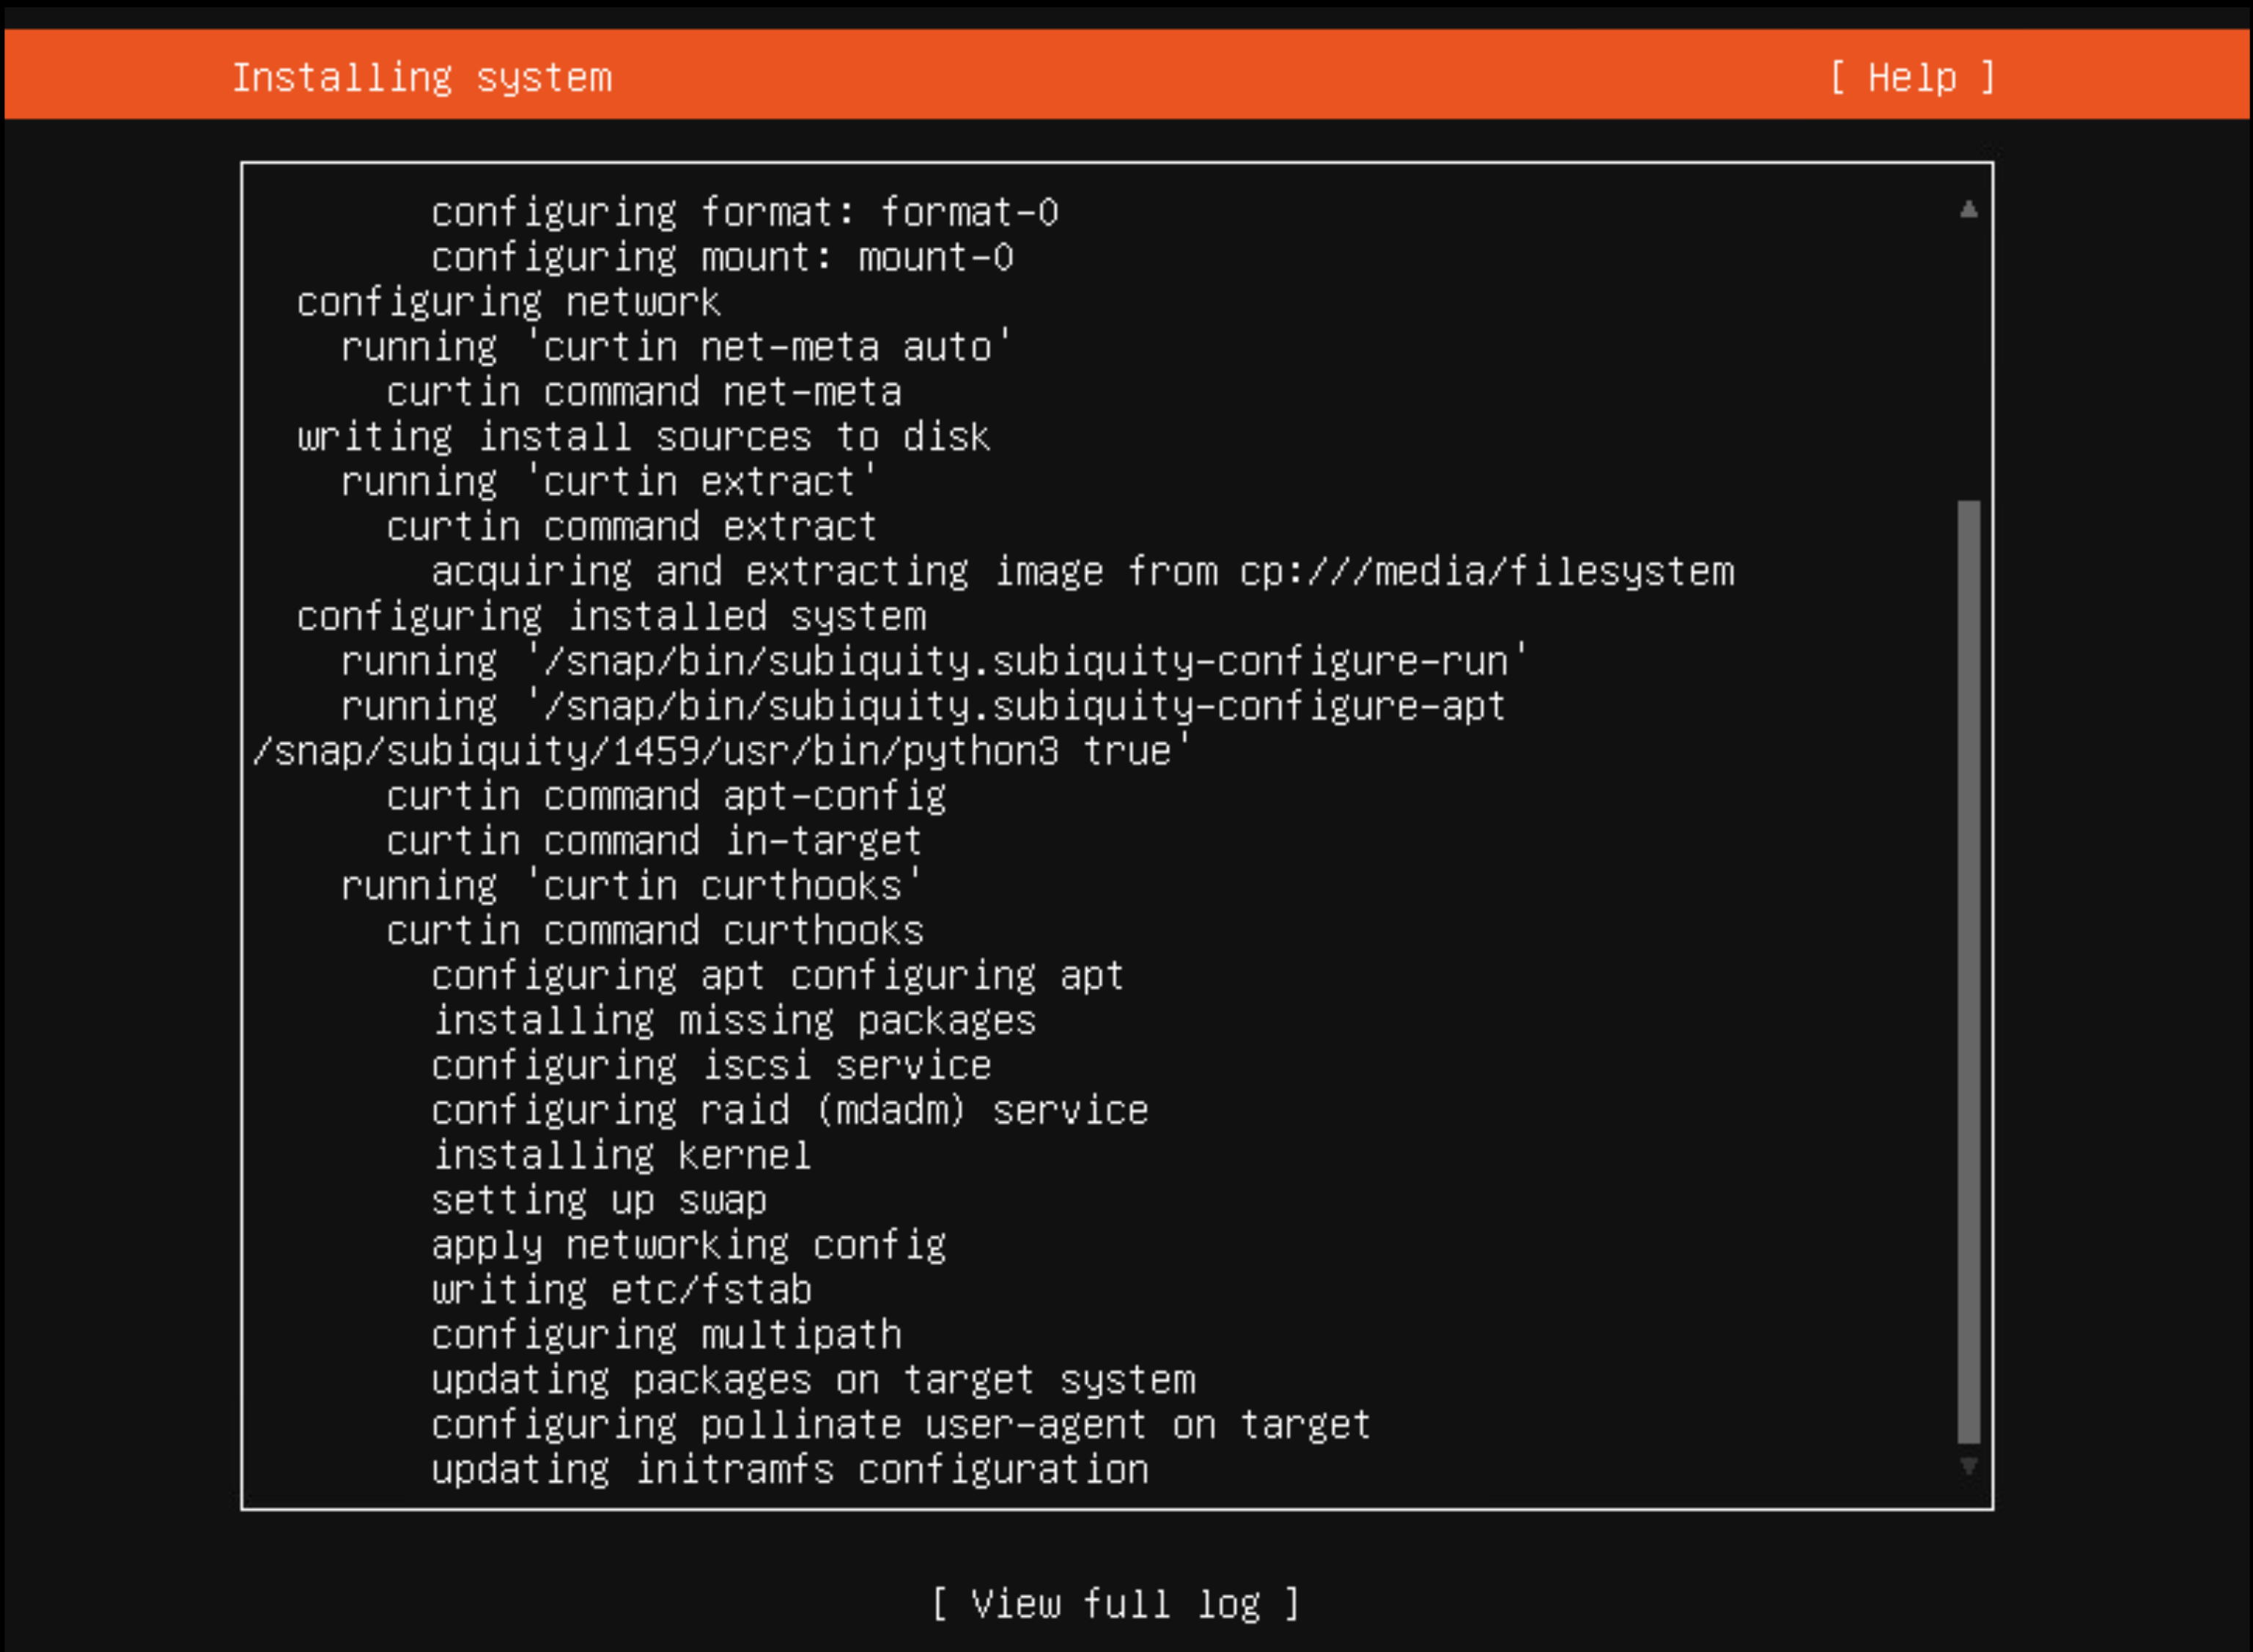 Achttiende schermopname van een Ubuntu-installatie.